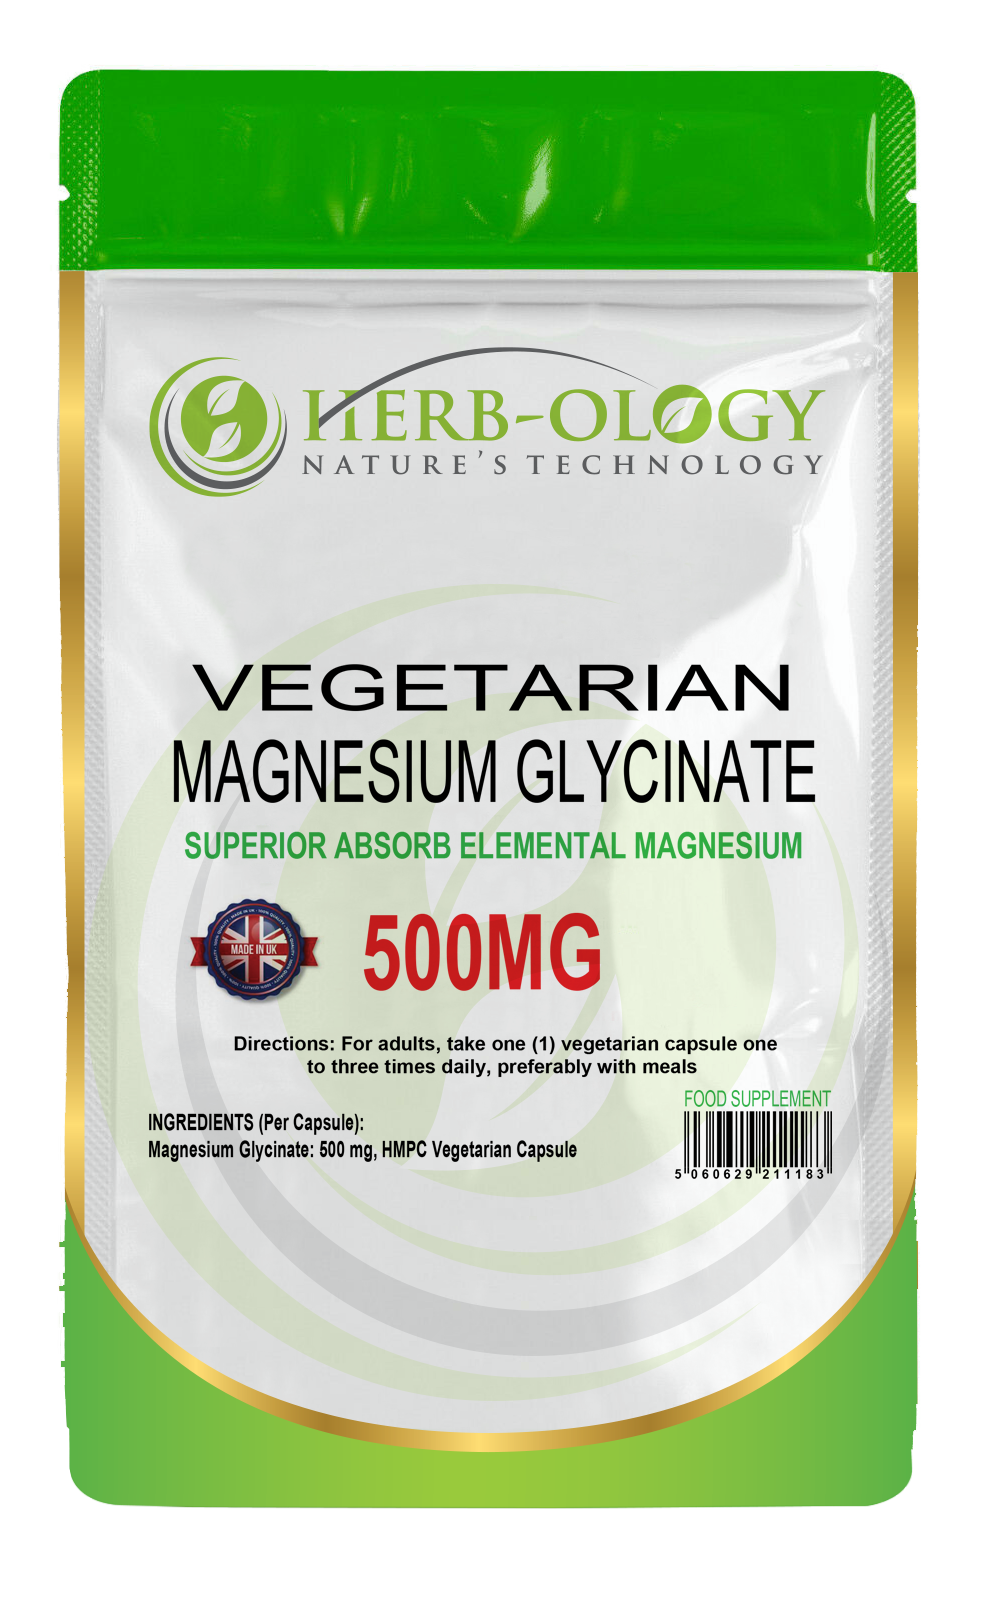 Magnesium Glycinate 500mg Vegan Capsules For Magnesium Deficiency